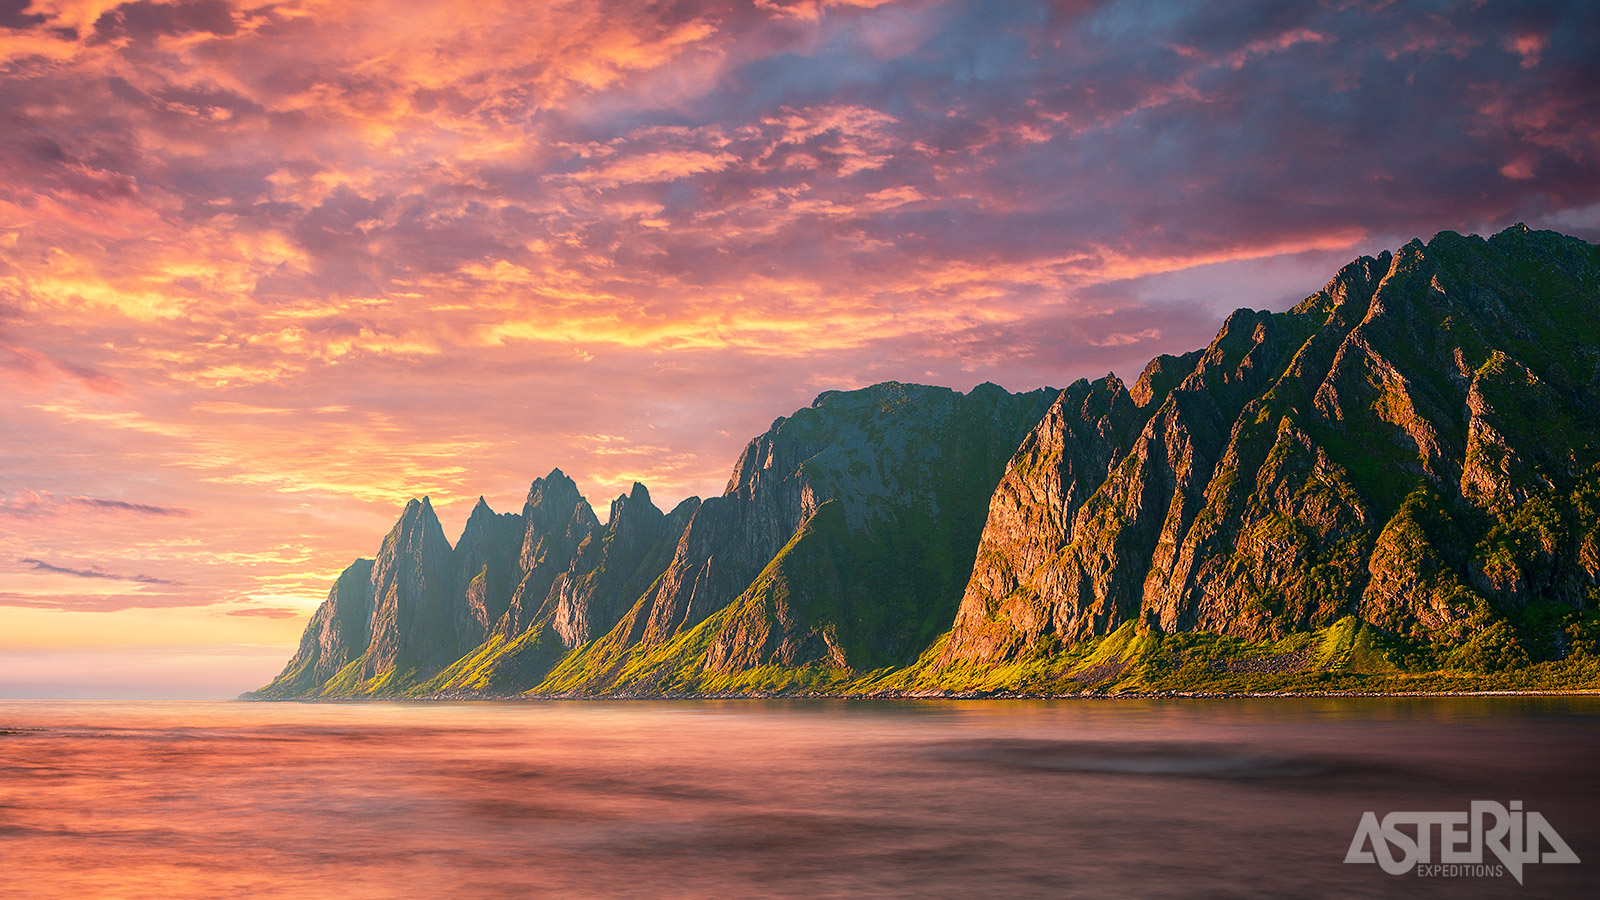 Senja met zijn spectaculaire rotsformaties is één van de grootste eilanden van de Vesterålen